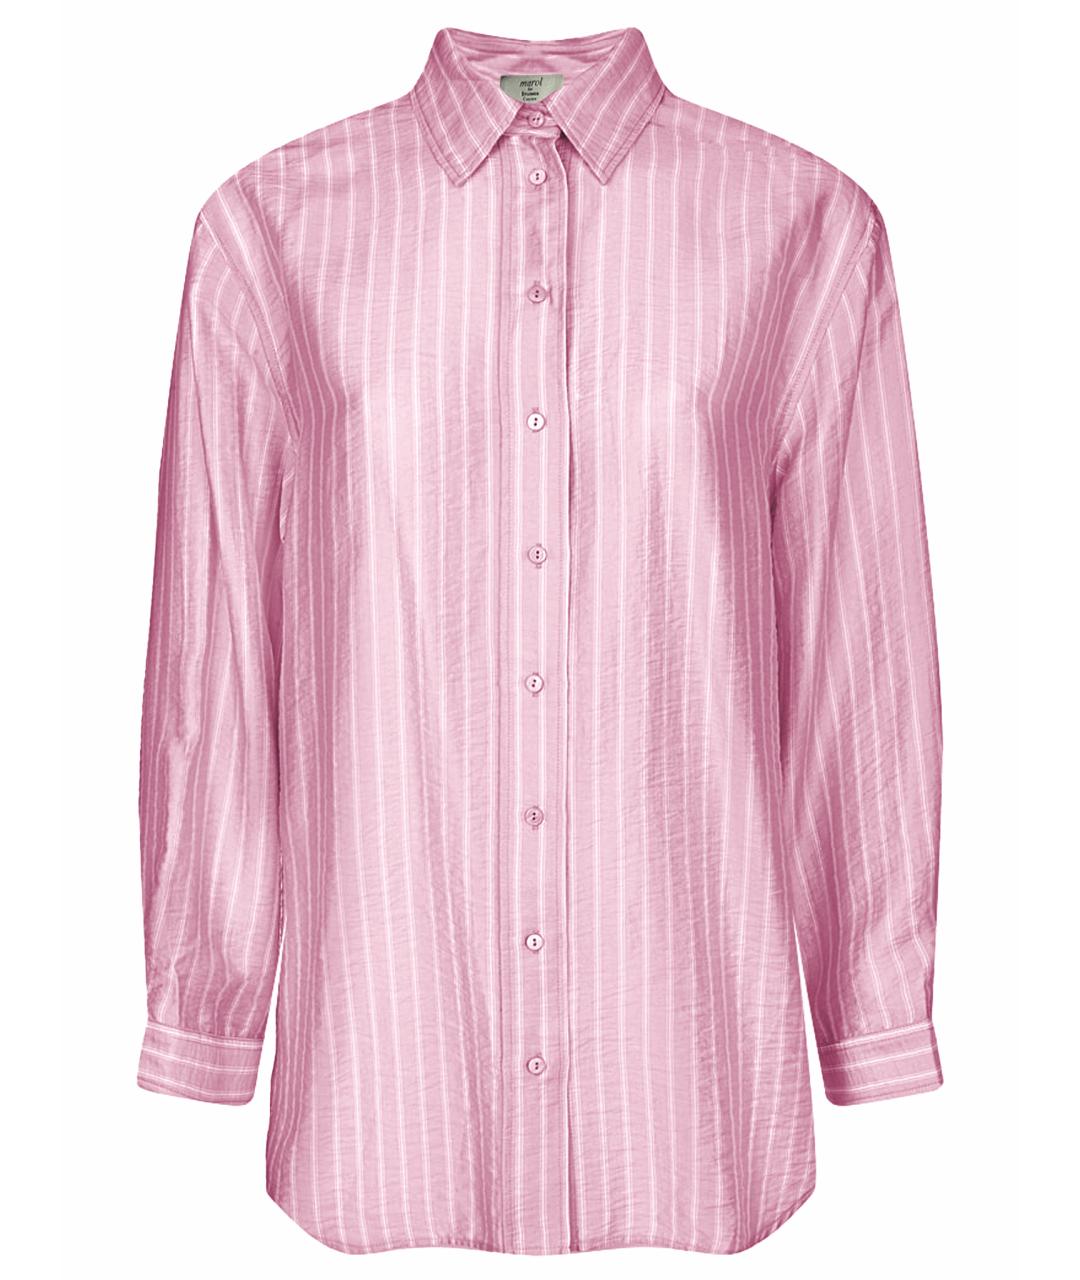 MAROL Шелковая классическая рубашка, фото 1